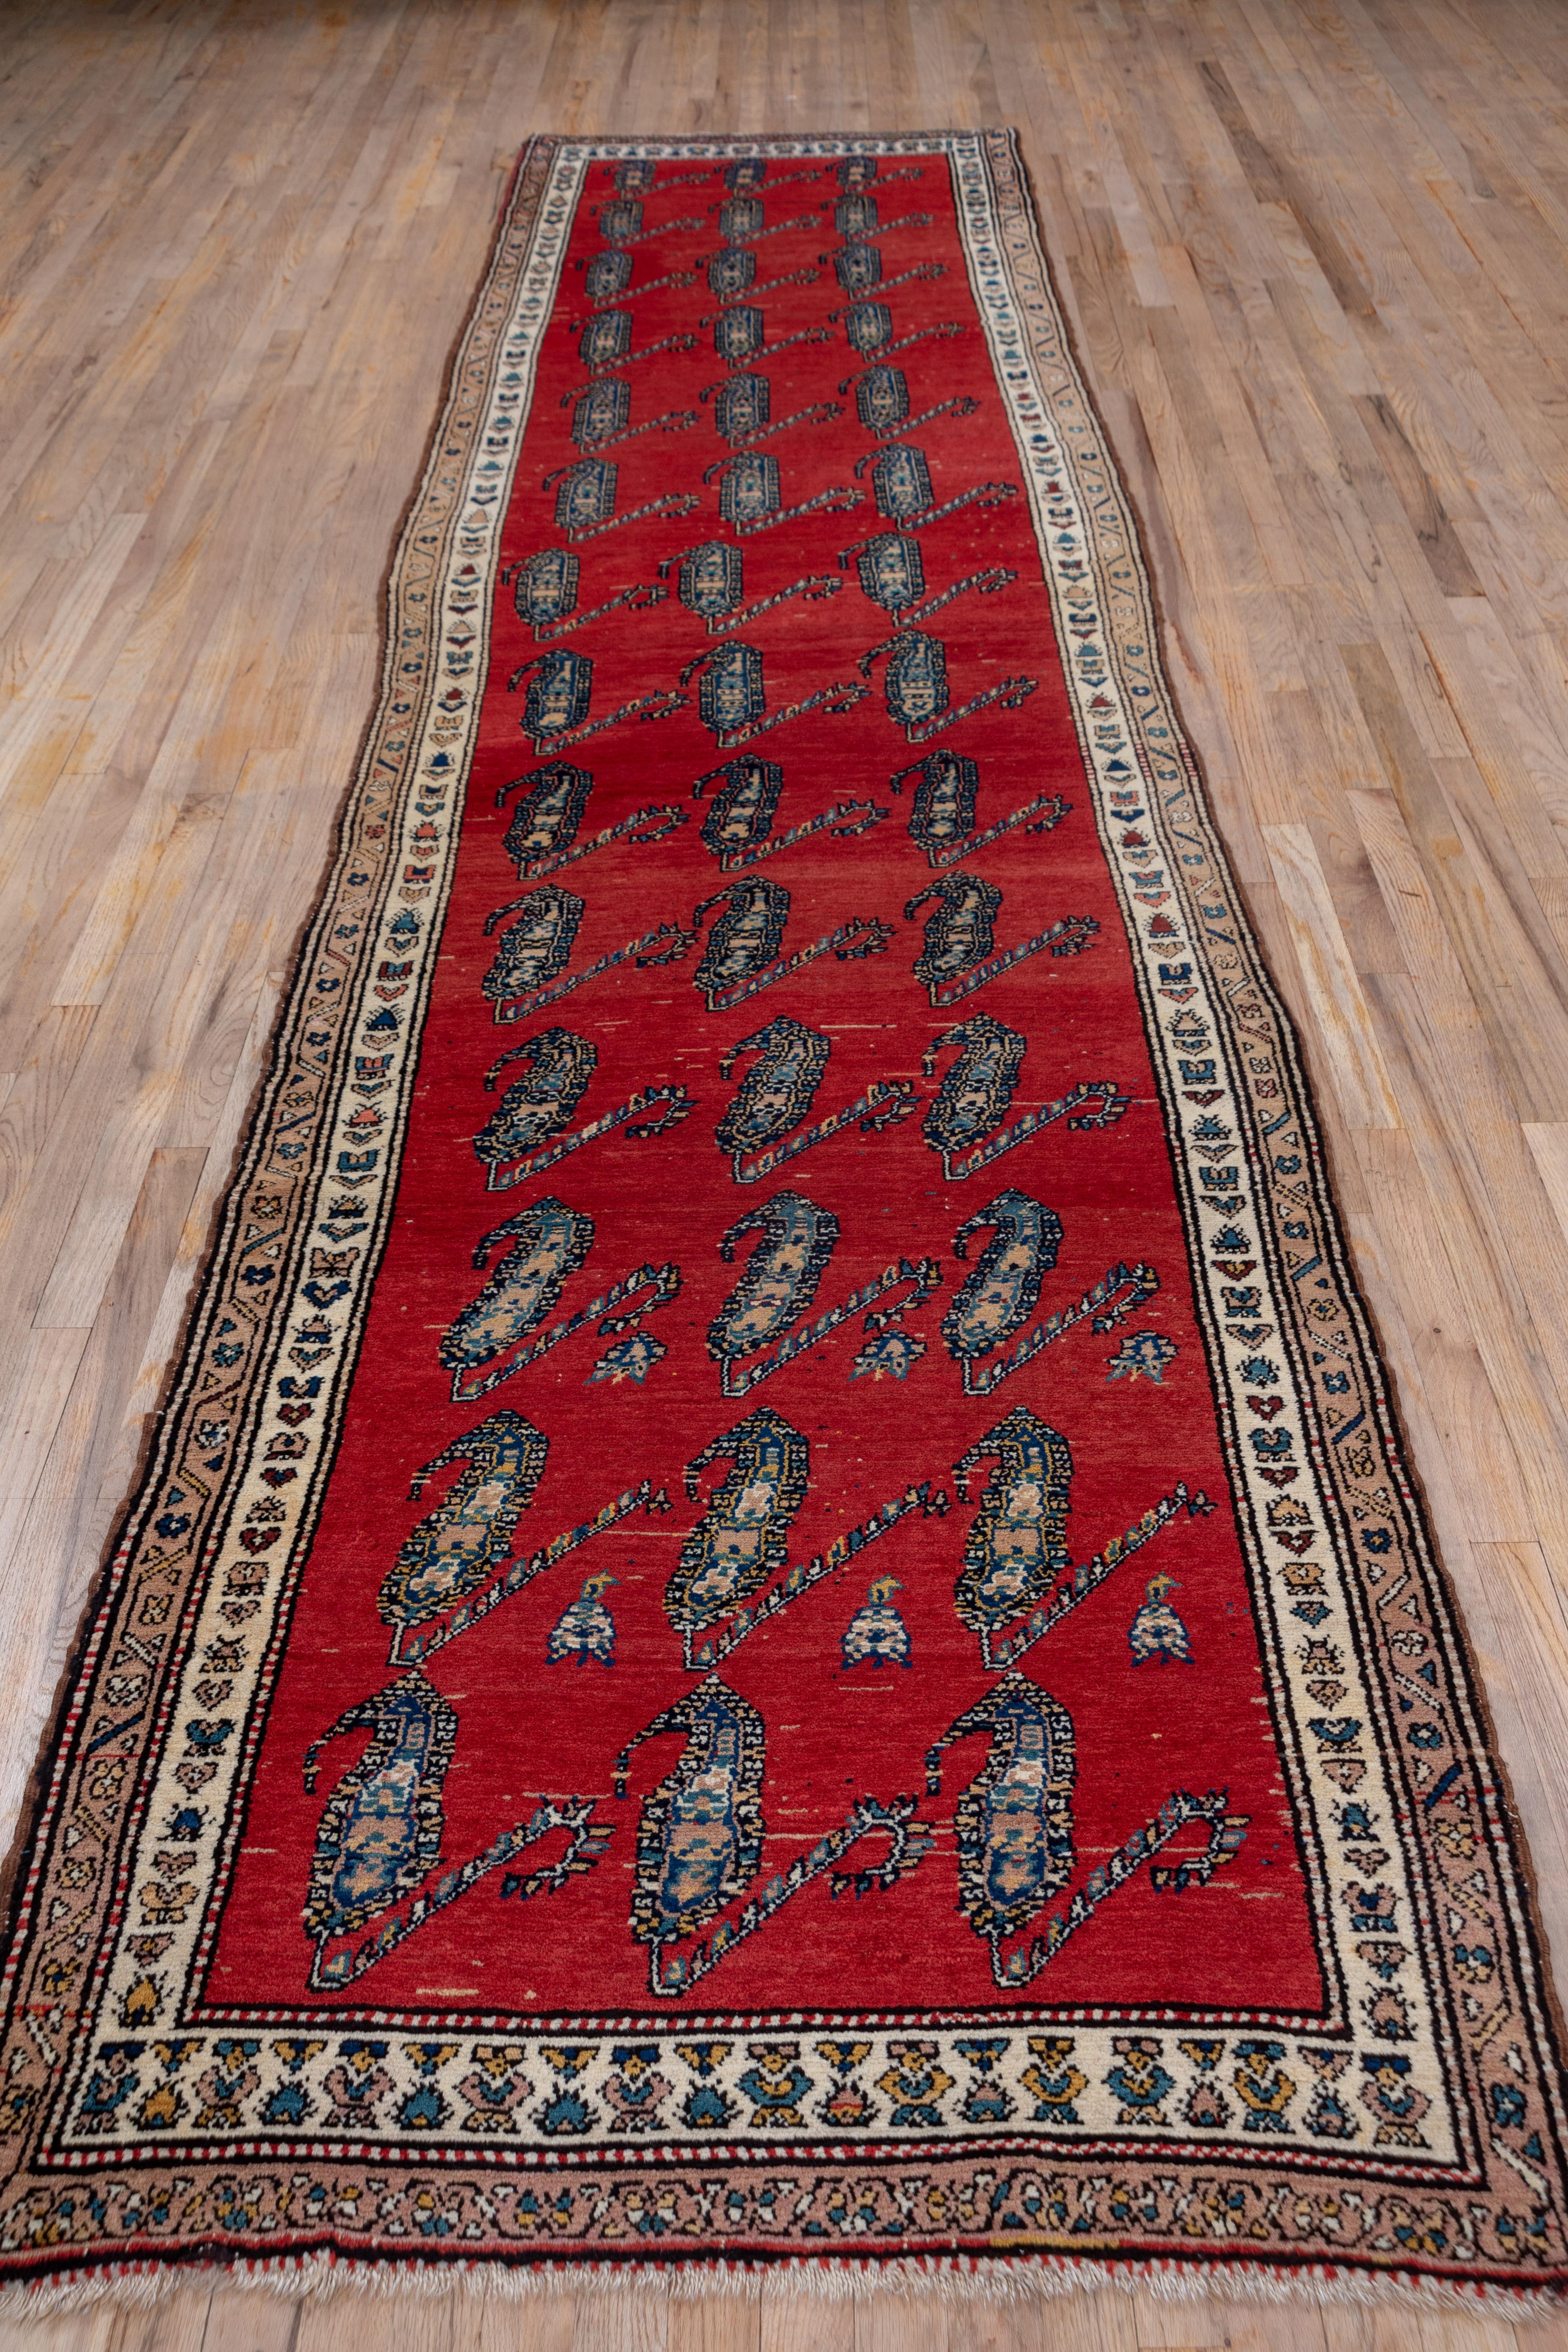 Das lebhafte rote Feld zeigt Reihen von leicht geneigten, schlanken, geblümten Botten, drei in einer Reihe, in einem eindeutig aus Textilien stammenden Muster. Die cremefarbene Hauptbordüre dieses attraktiven rustikalen Läufers aus Westpersien zeigt